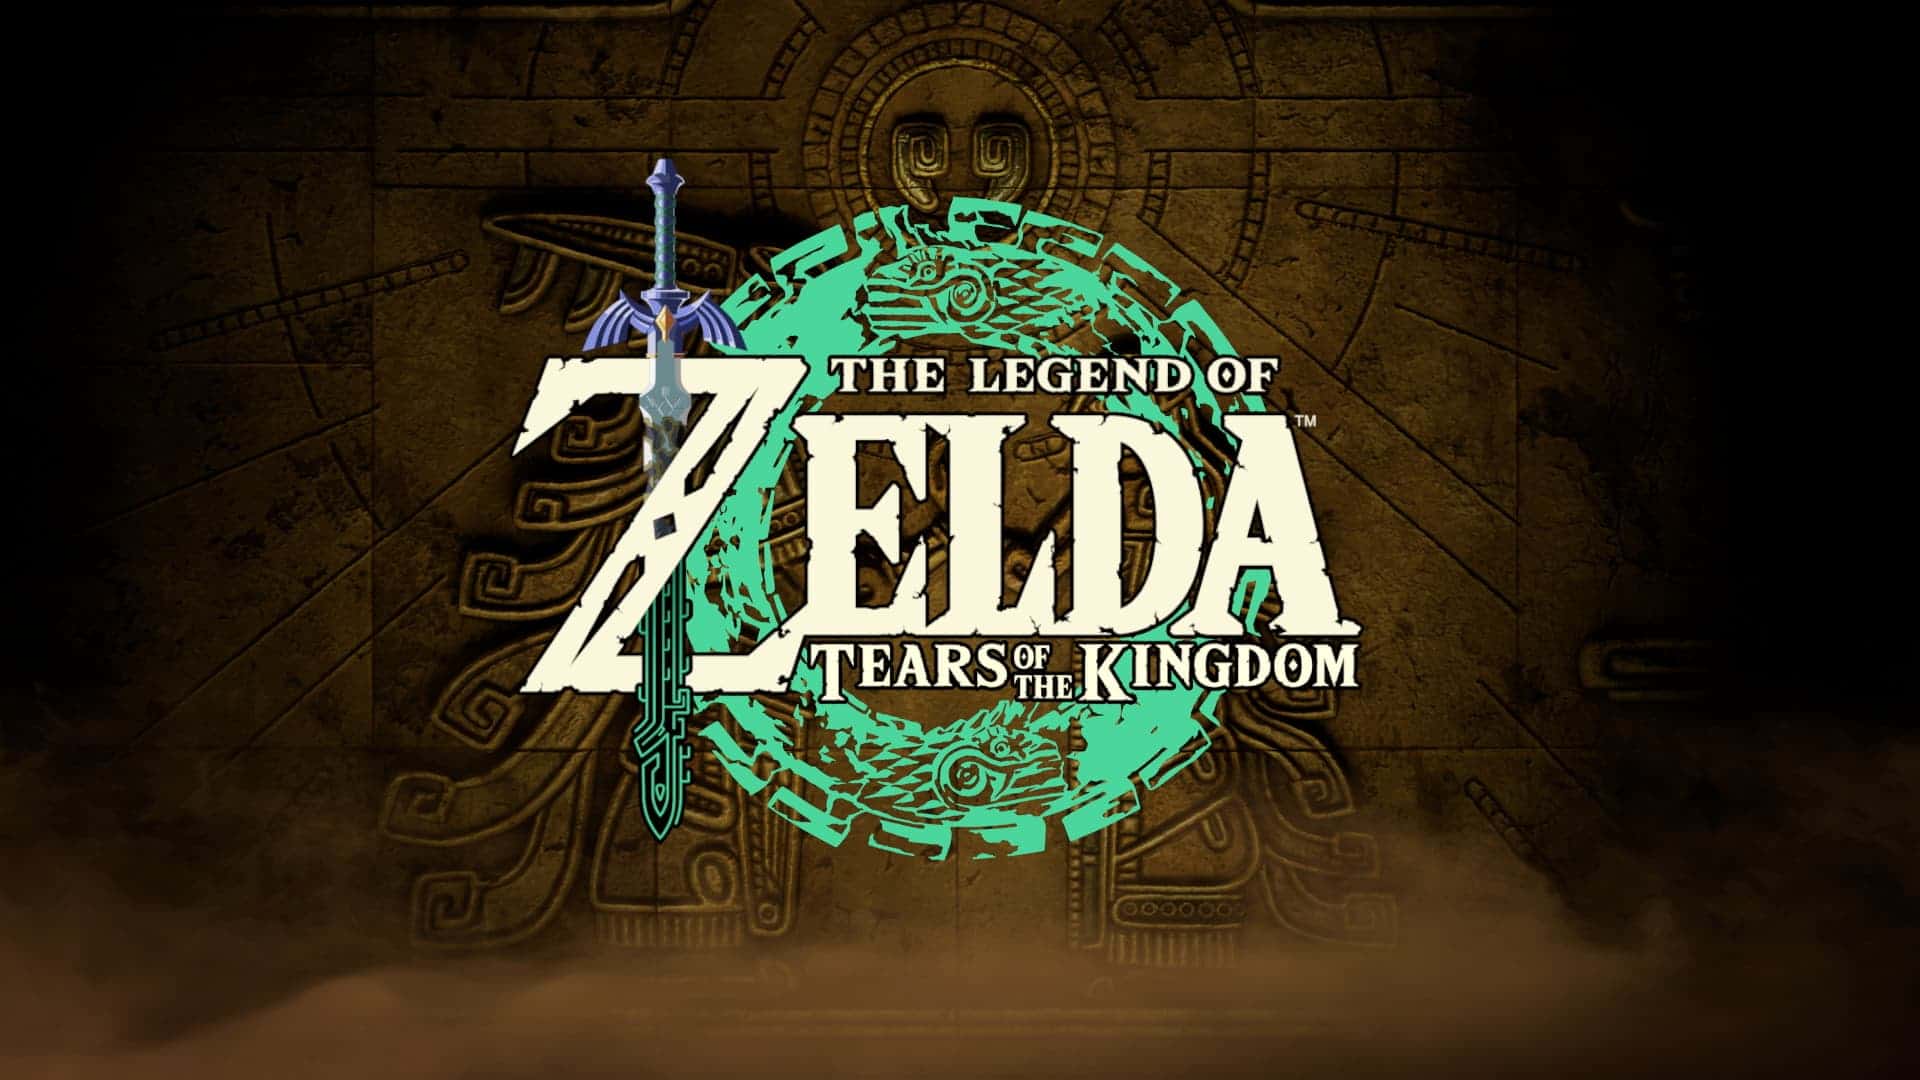 Link Zelda Tears of the Kingdom Wallpaper 4K HD PC 6201k